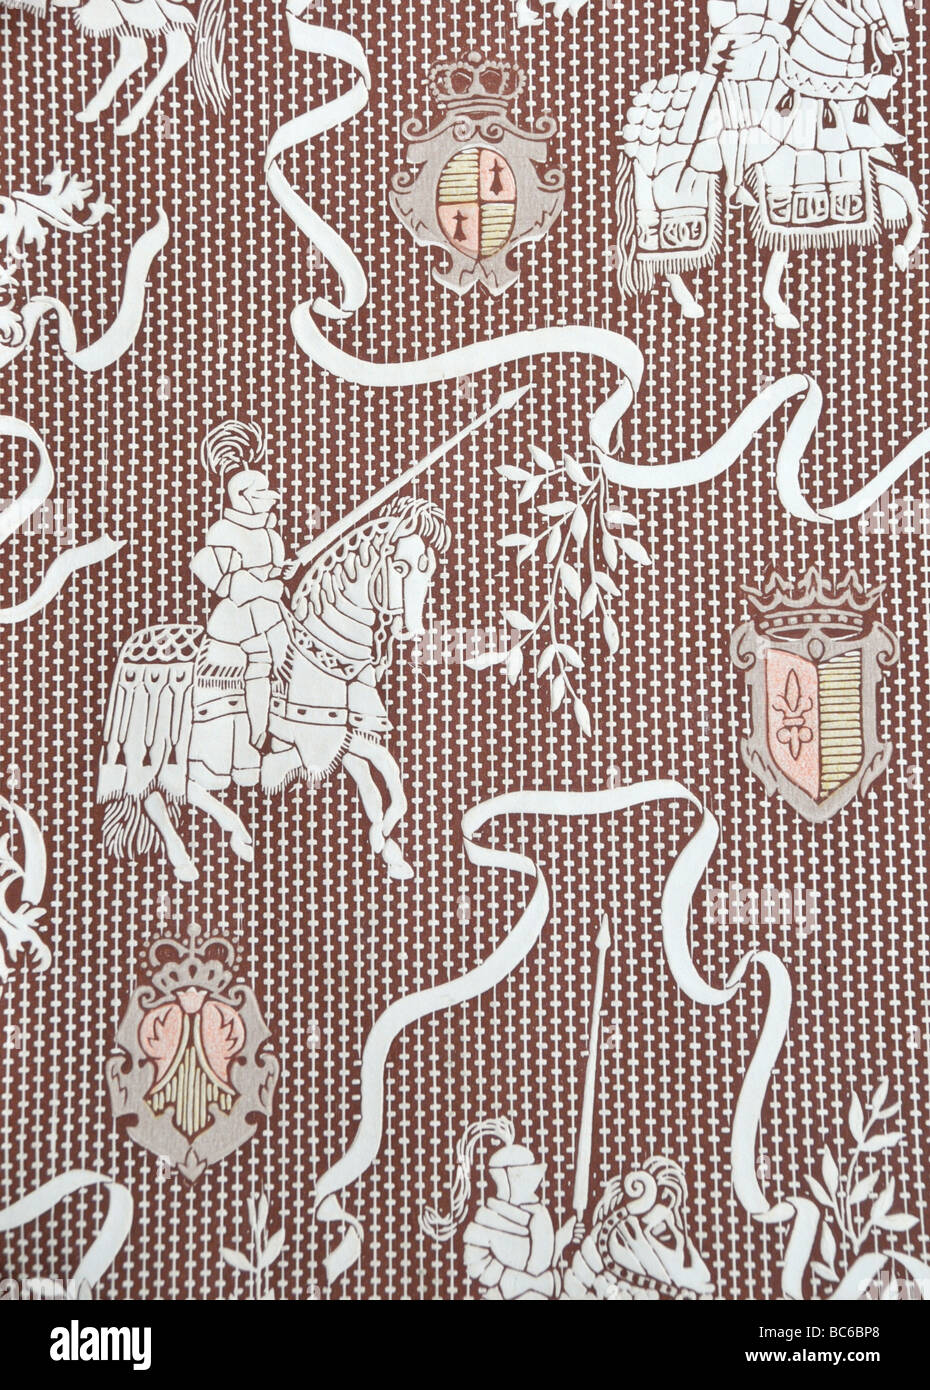 50er Jahre Tapeten Design der Ritter zu Pferde, Stockfoto